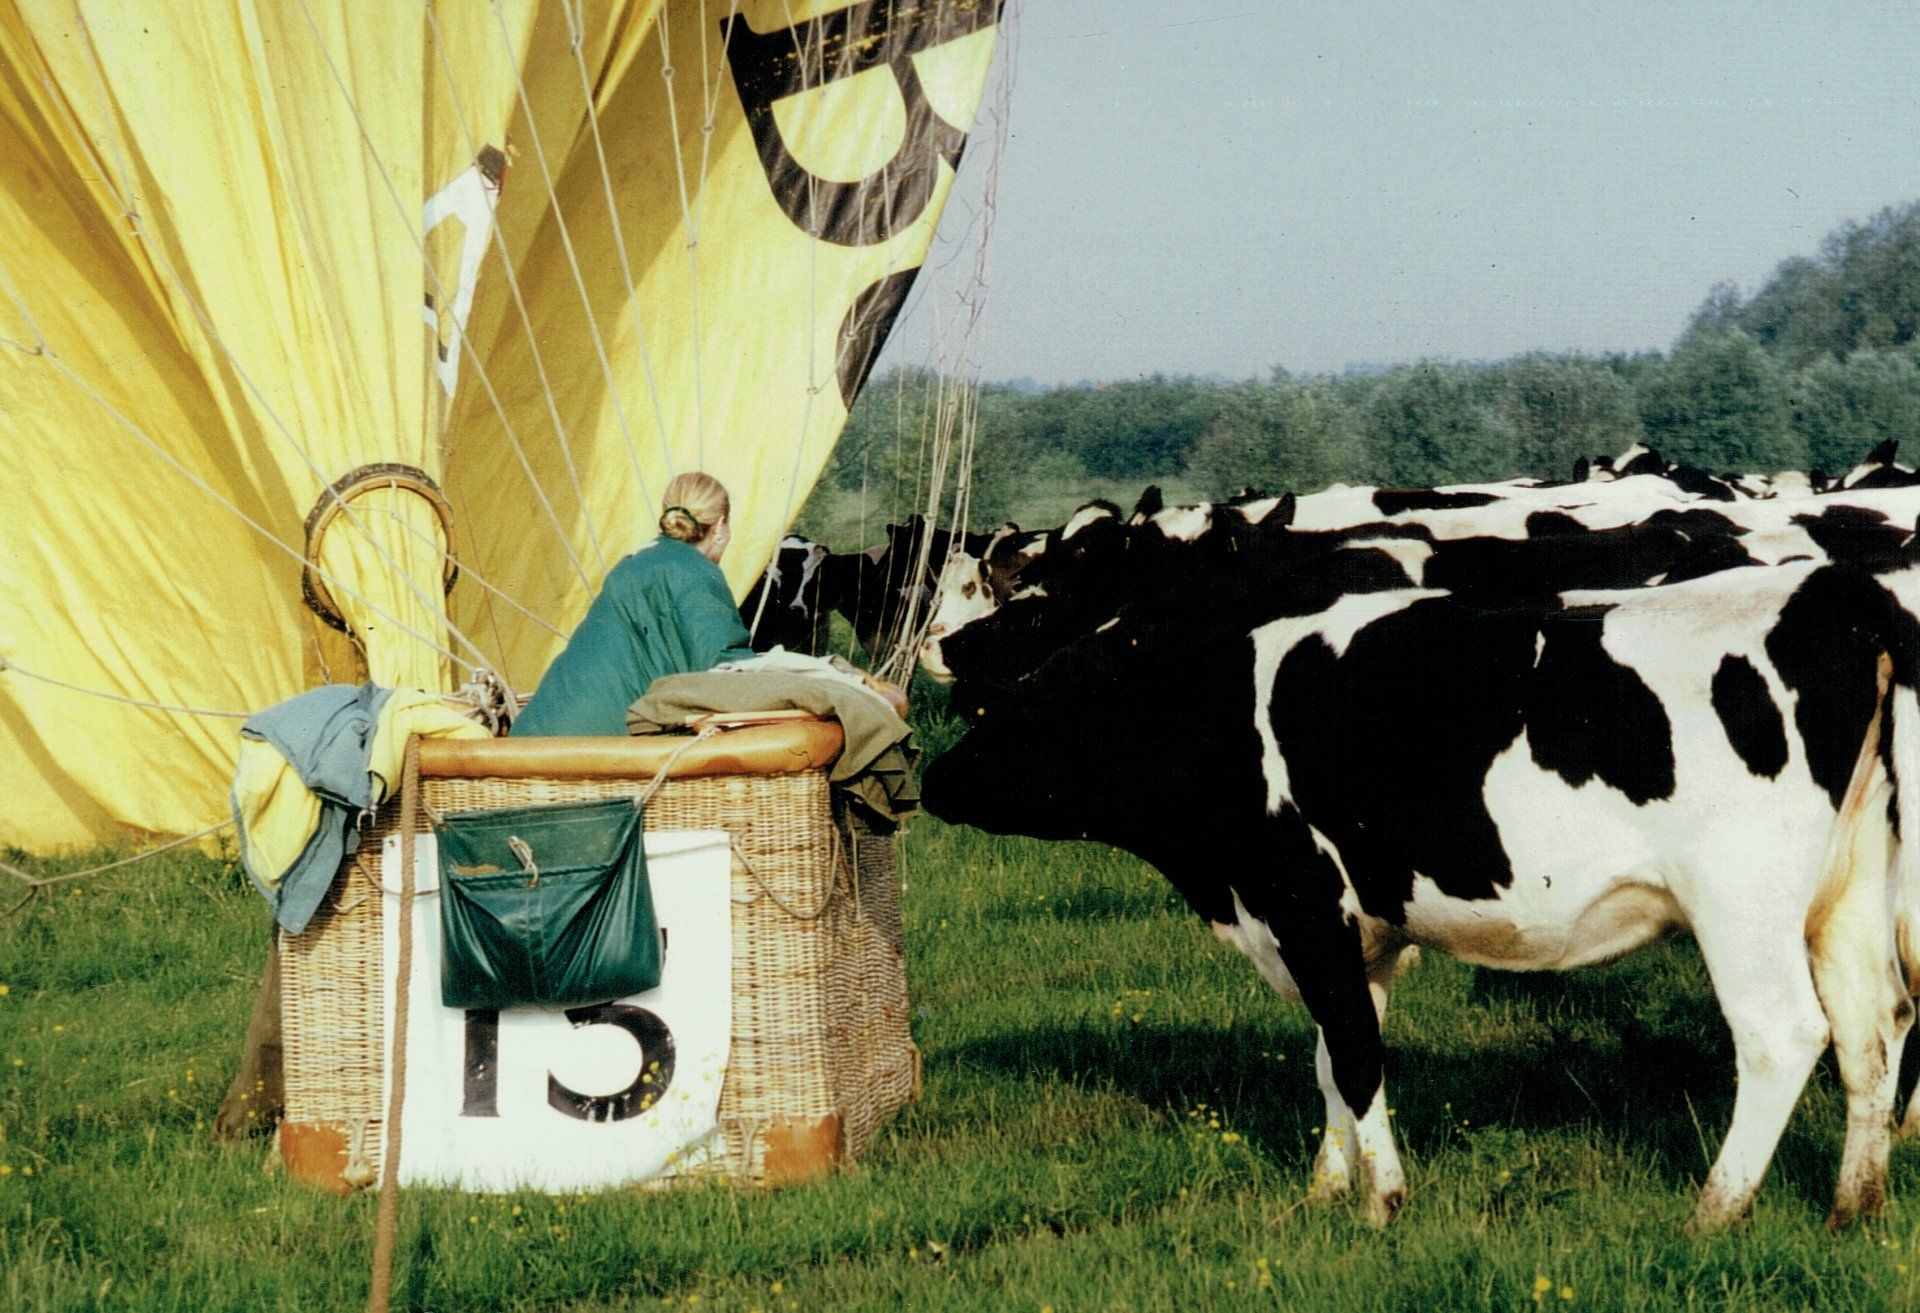 Gasballonlandung in einer Kuhherde